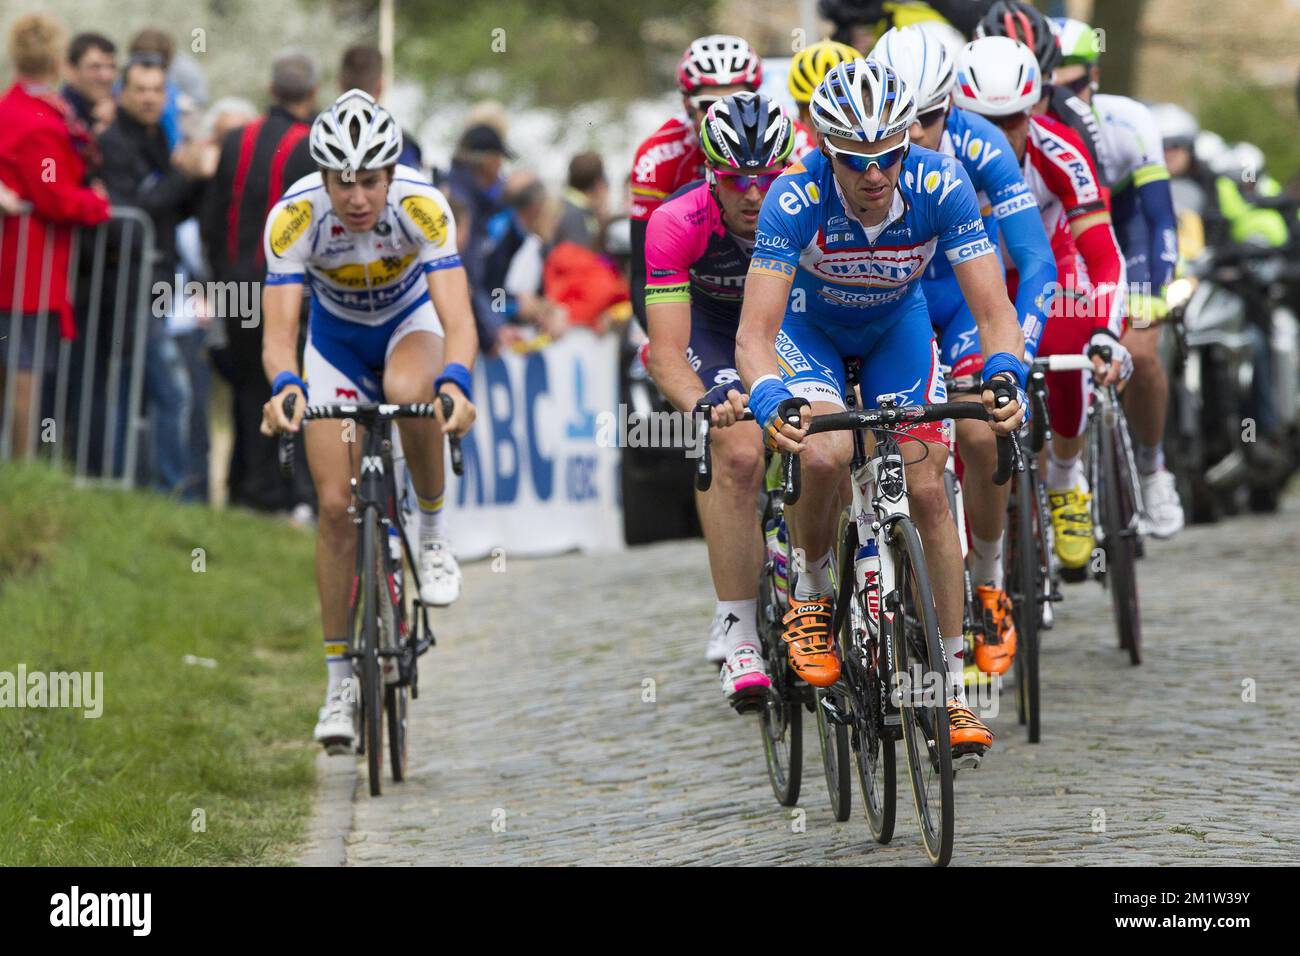 Belgian James Vanlandschoot of Wanty-Groupe Gobert in action during the ' Ronde van Vlaanderen - Tour des